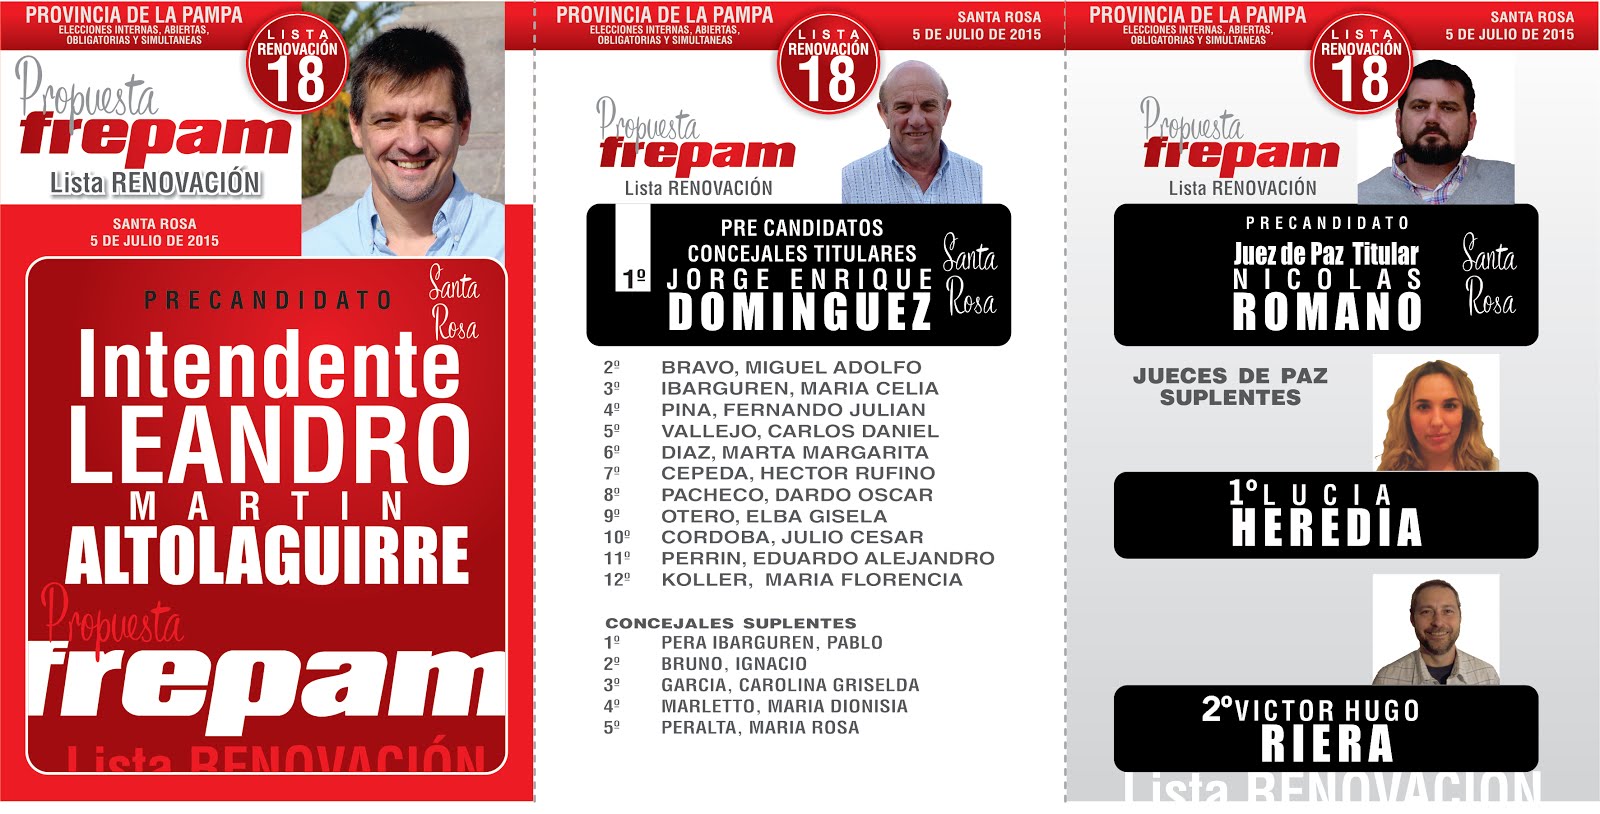 Propuesta Frepam. Santa Rosa La Pampa